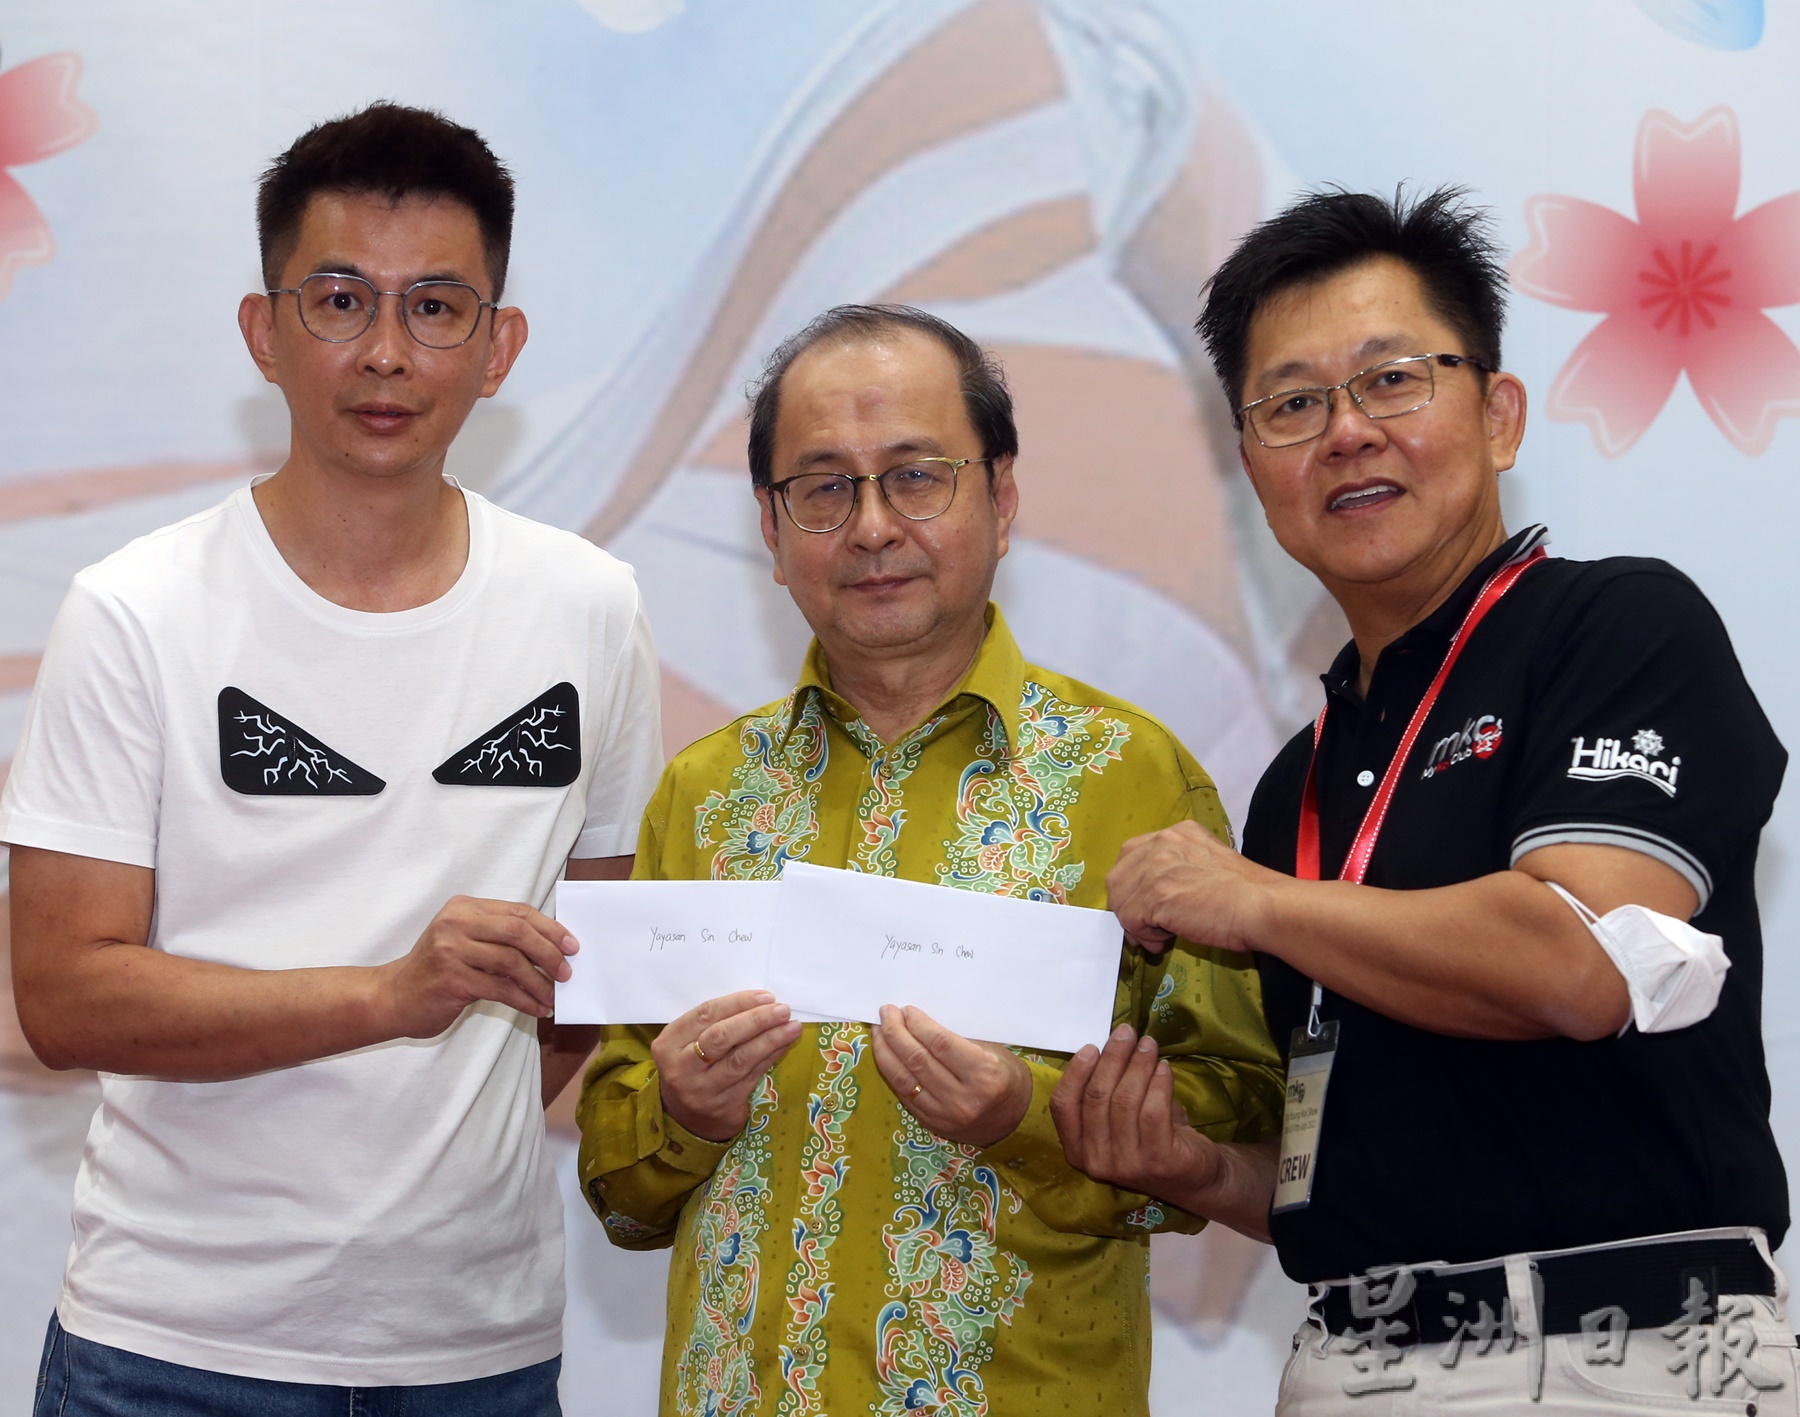 马来西亚锦鲤公会捐献1万令吉予星洲日报基金会